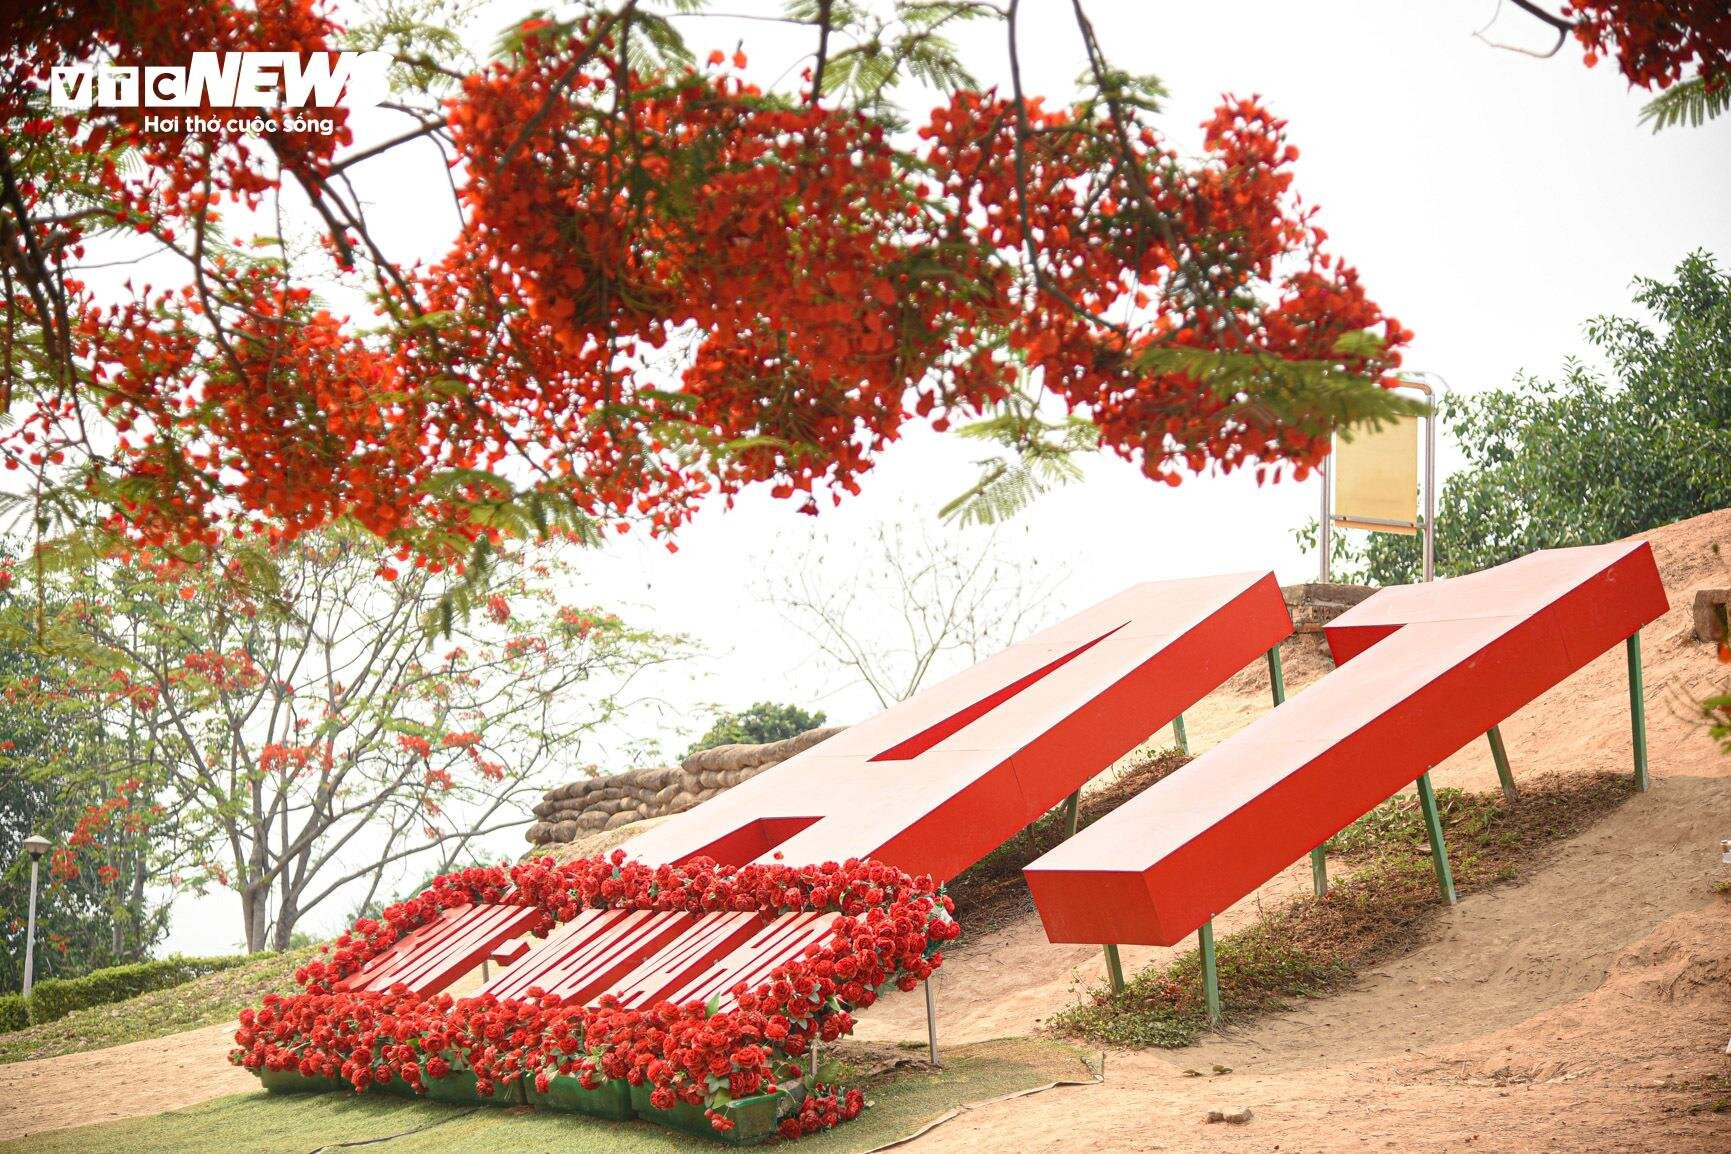 Sắc màu hoa phượng rực rỡ quanh đồi A1 ở Điện Biên  - 1